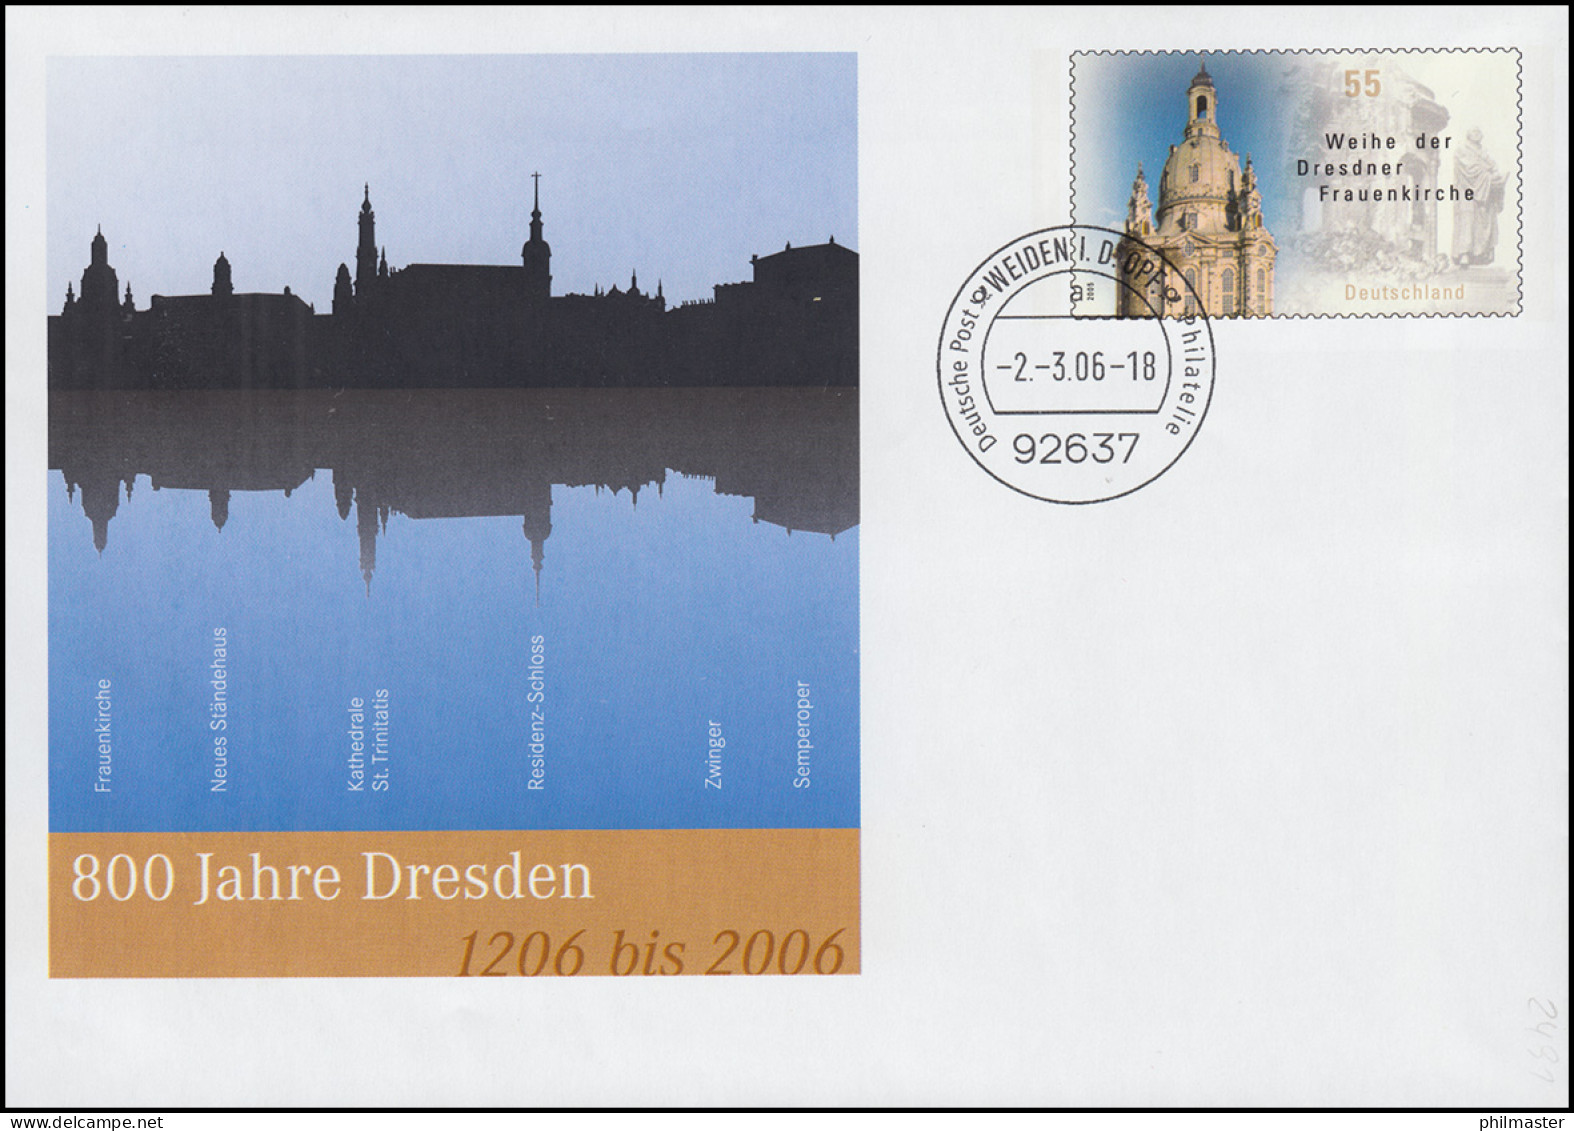 USo 112 Jubiläum 800 Jahre Dresden 2006, VS-O Weiden 2.3.06 - Umschläge - Ungebraucht